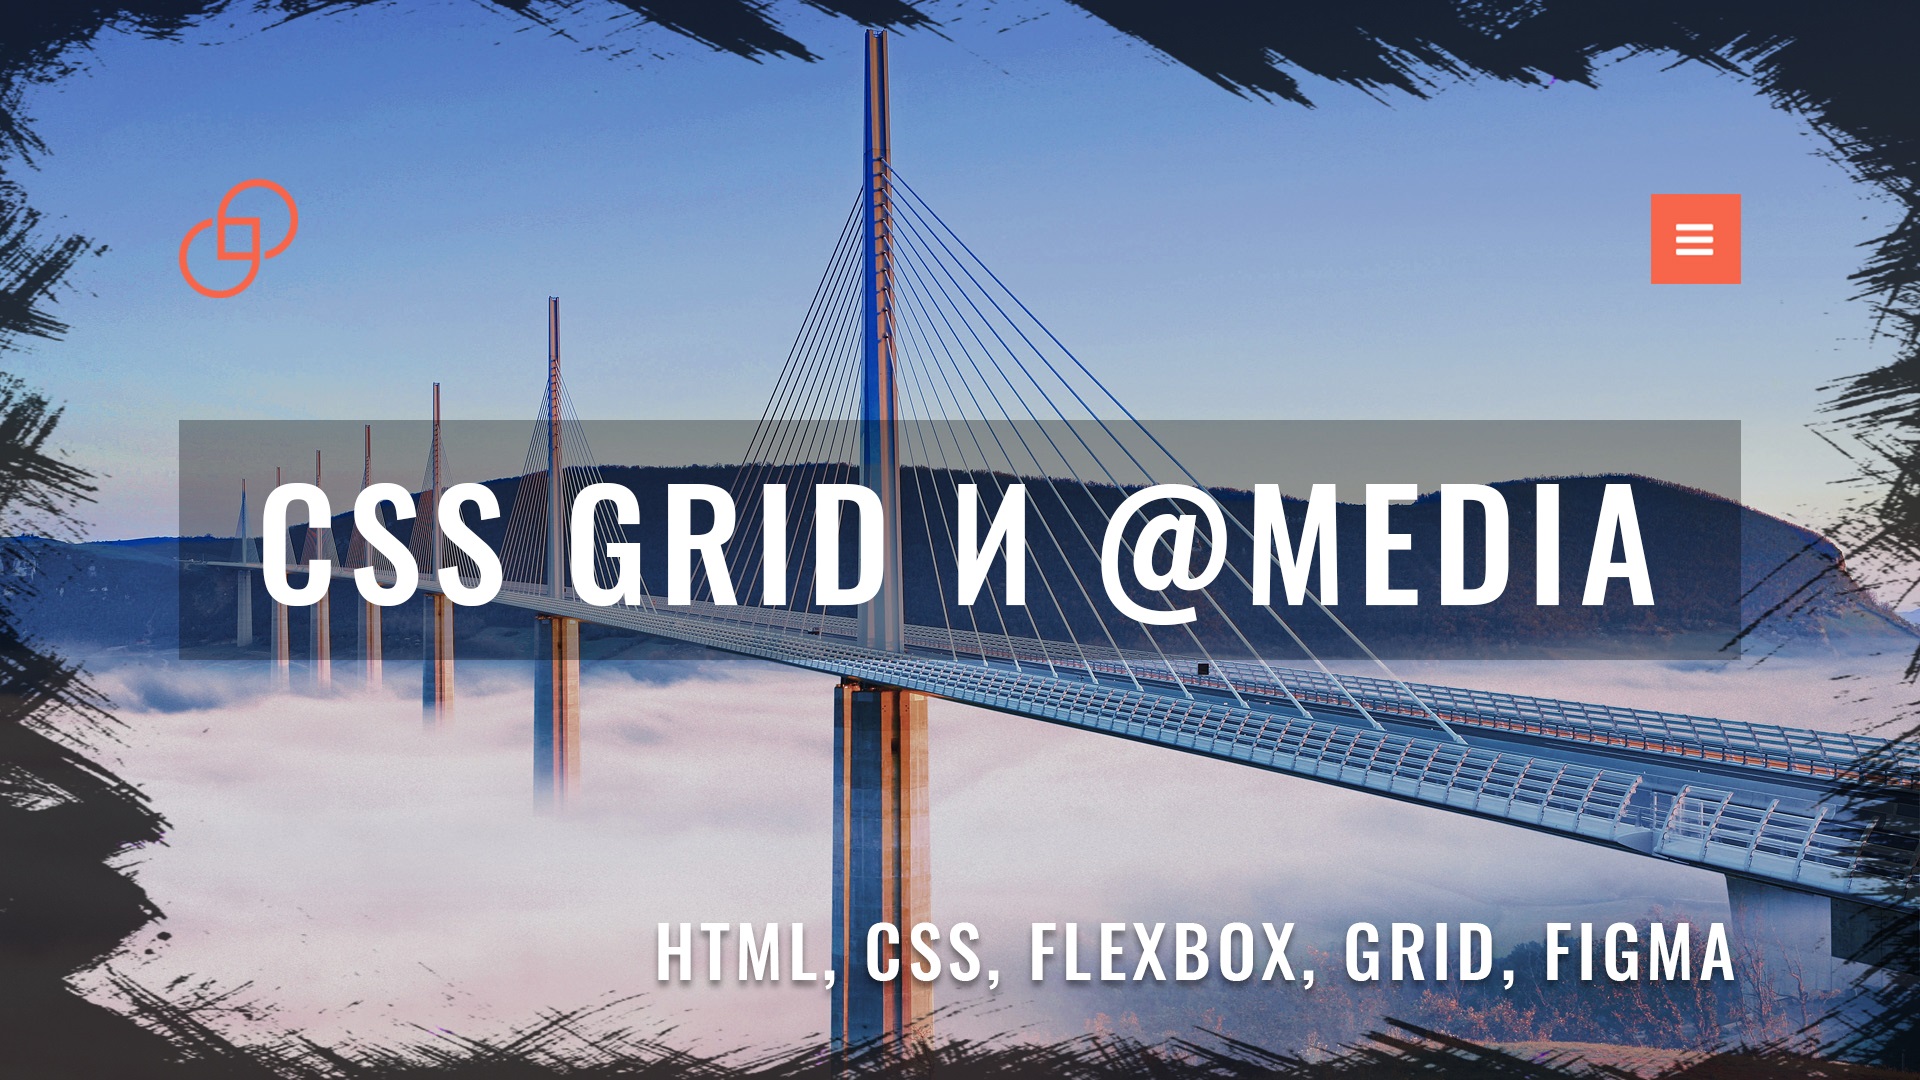 Адаптивная верстка сайта с нуля по макету из Figma #4 CSS Grid и медиа запросы